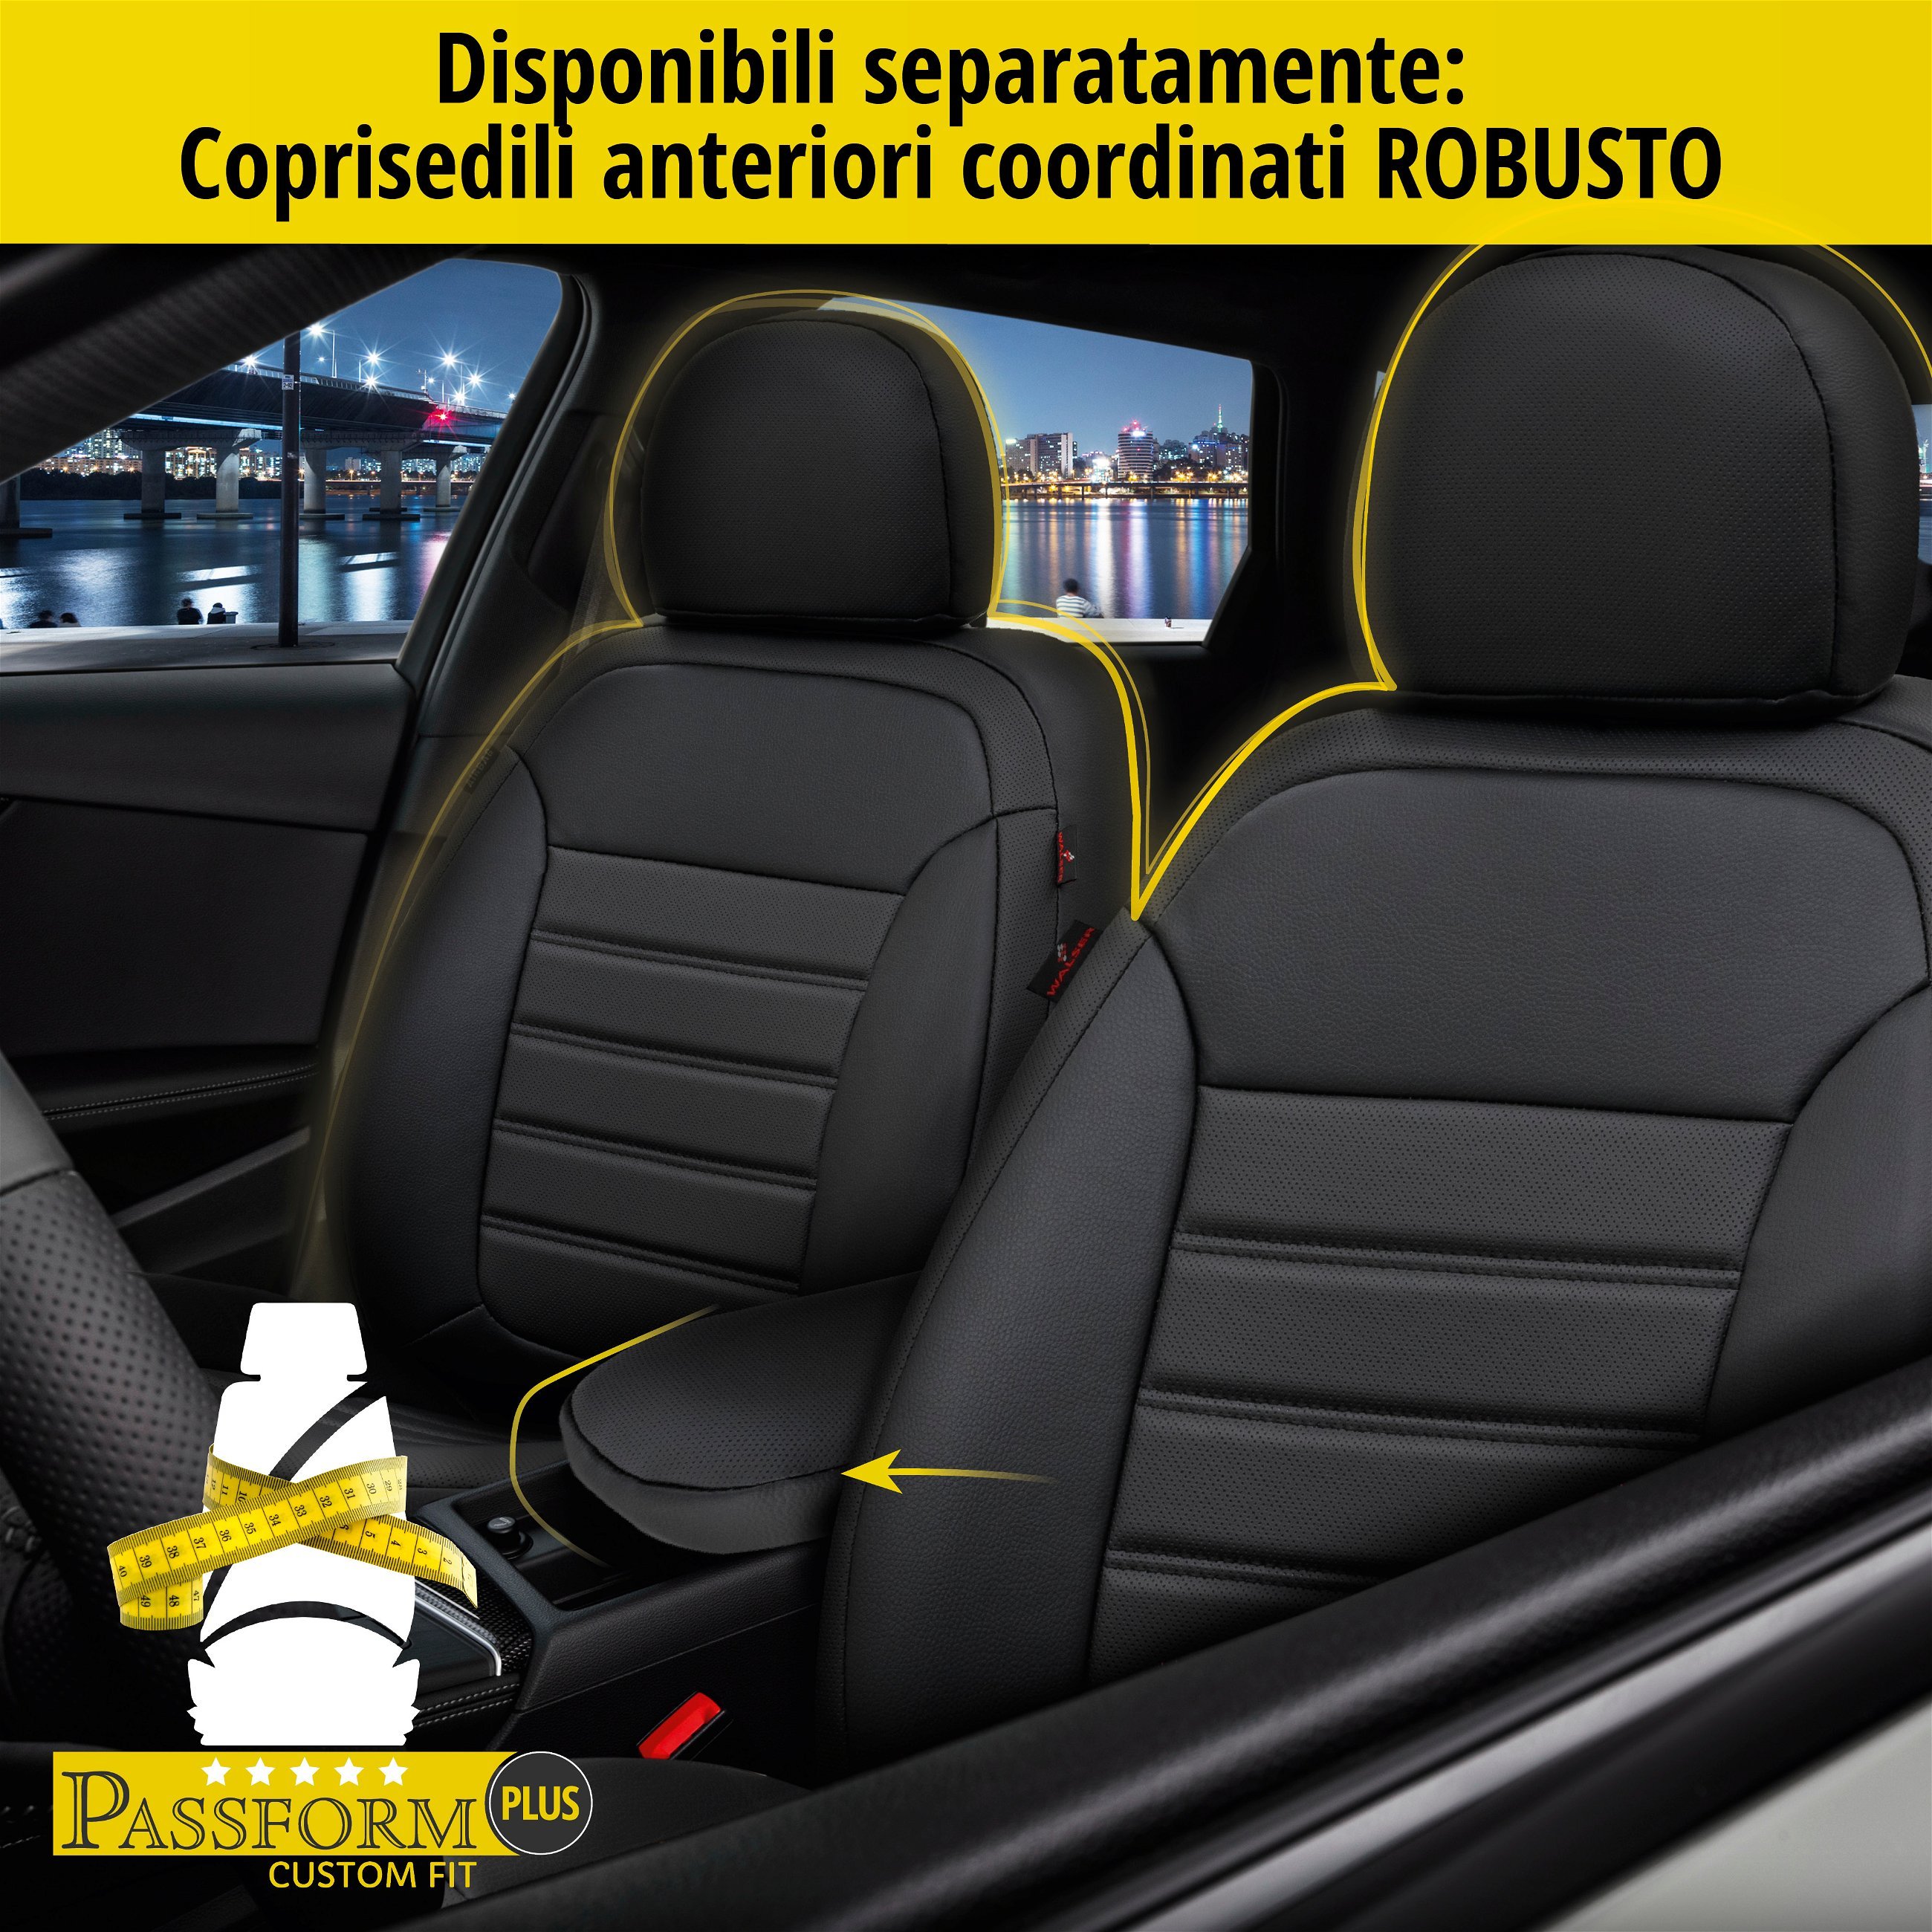 Coprisedili Robusto per Opel Astra H 01/2004-05/2014, Astra H notchback 02/2007-05/2014, 1 coprisedili posteriore per sedili normali